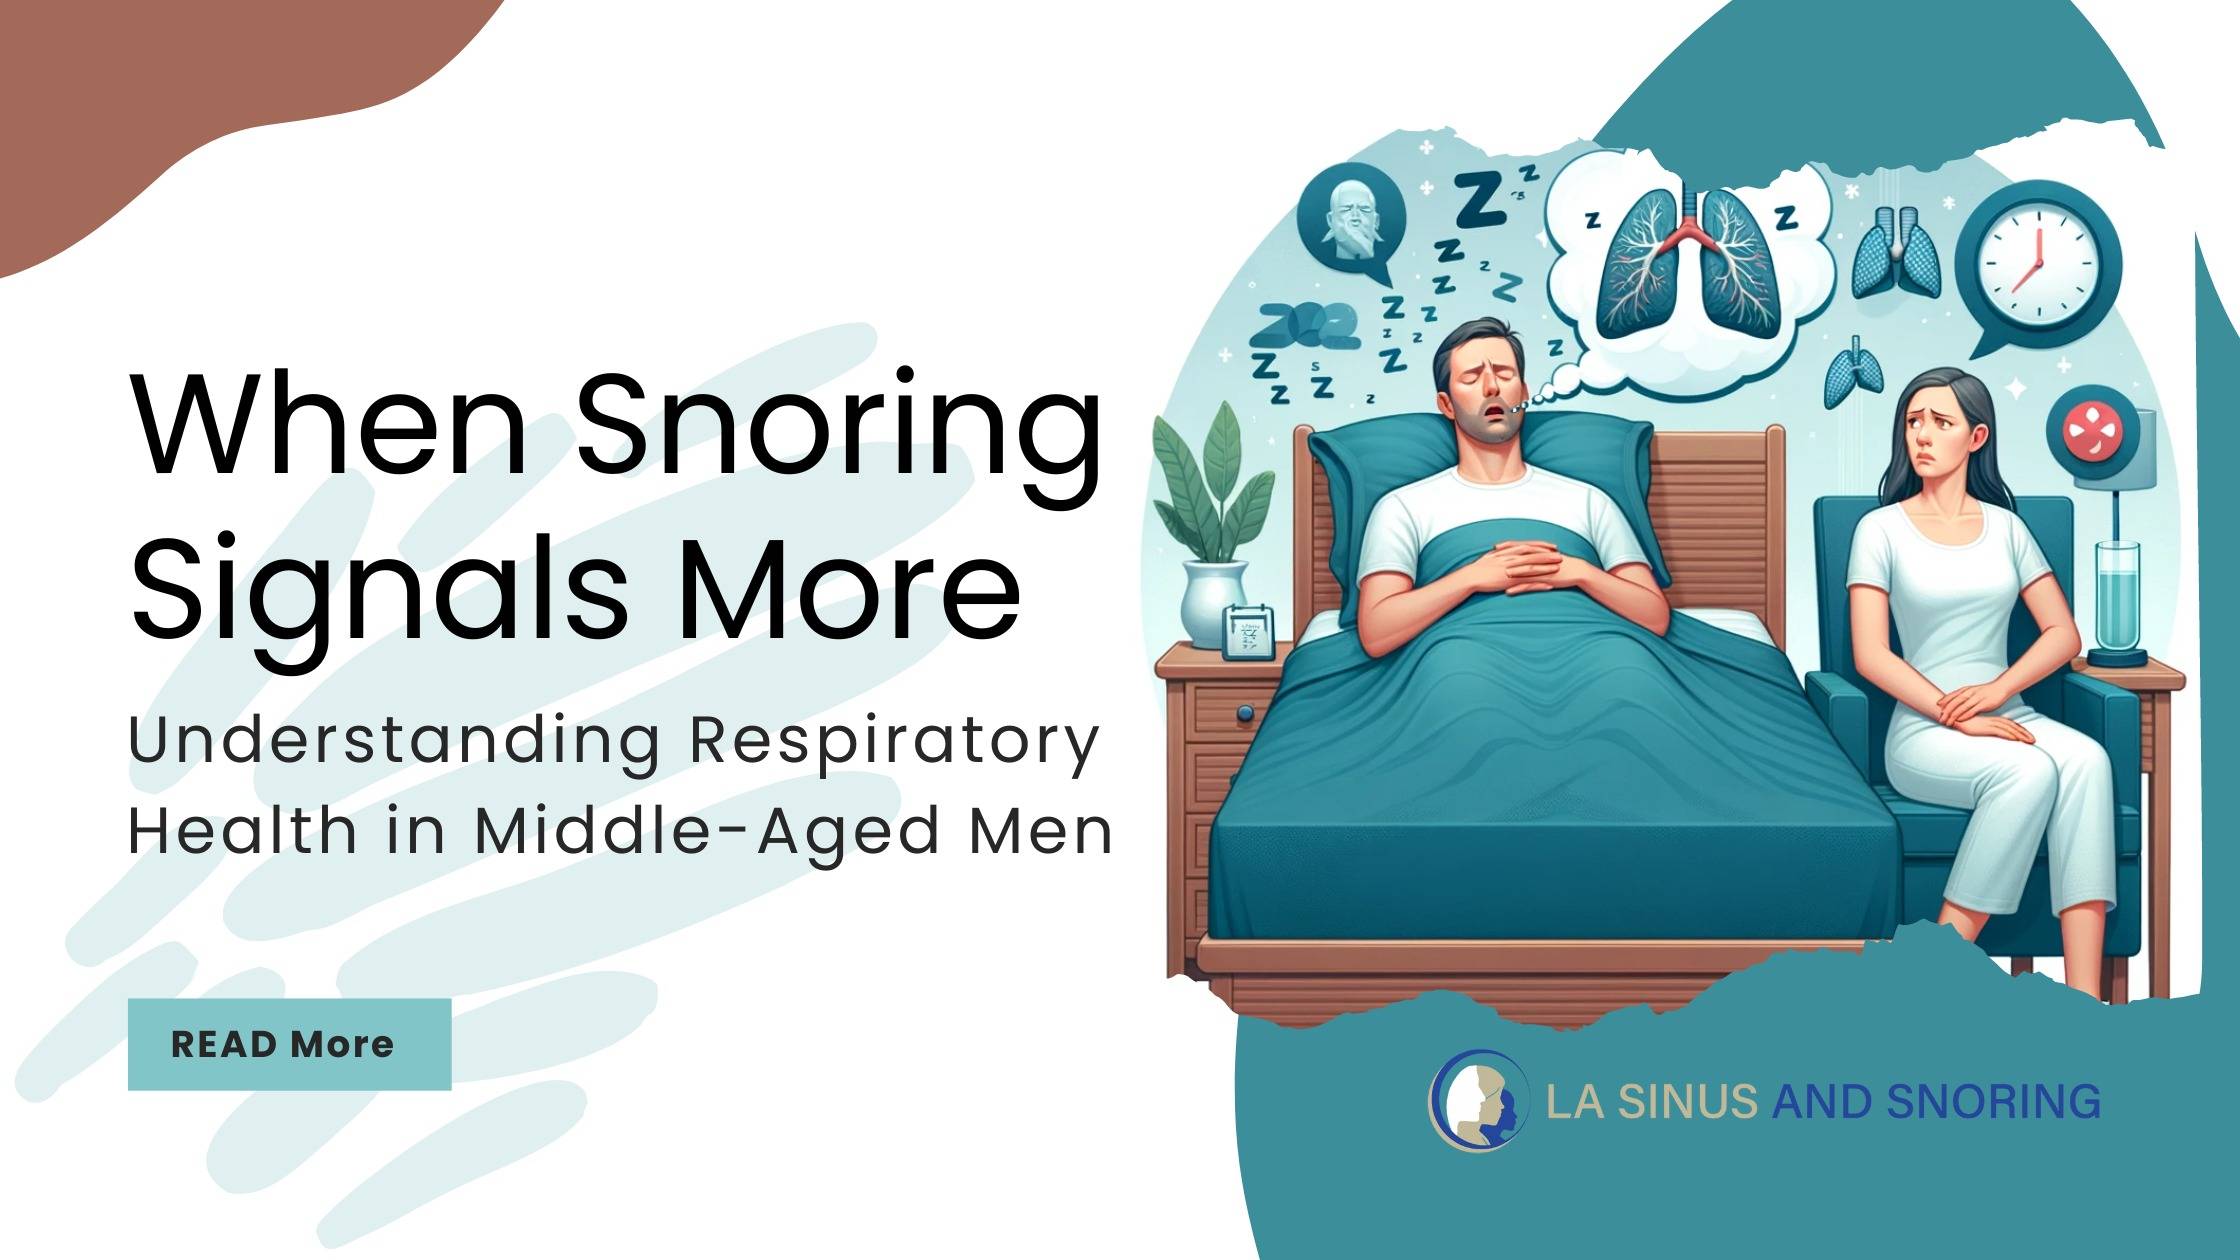 Understanding Respiratory Health in Middle-Aged MenUnderstanding Respiratory Health in Middle-Aged Men